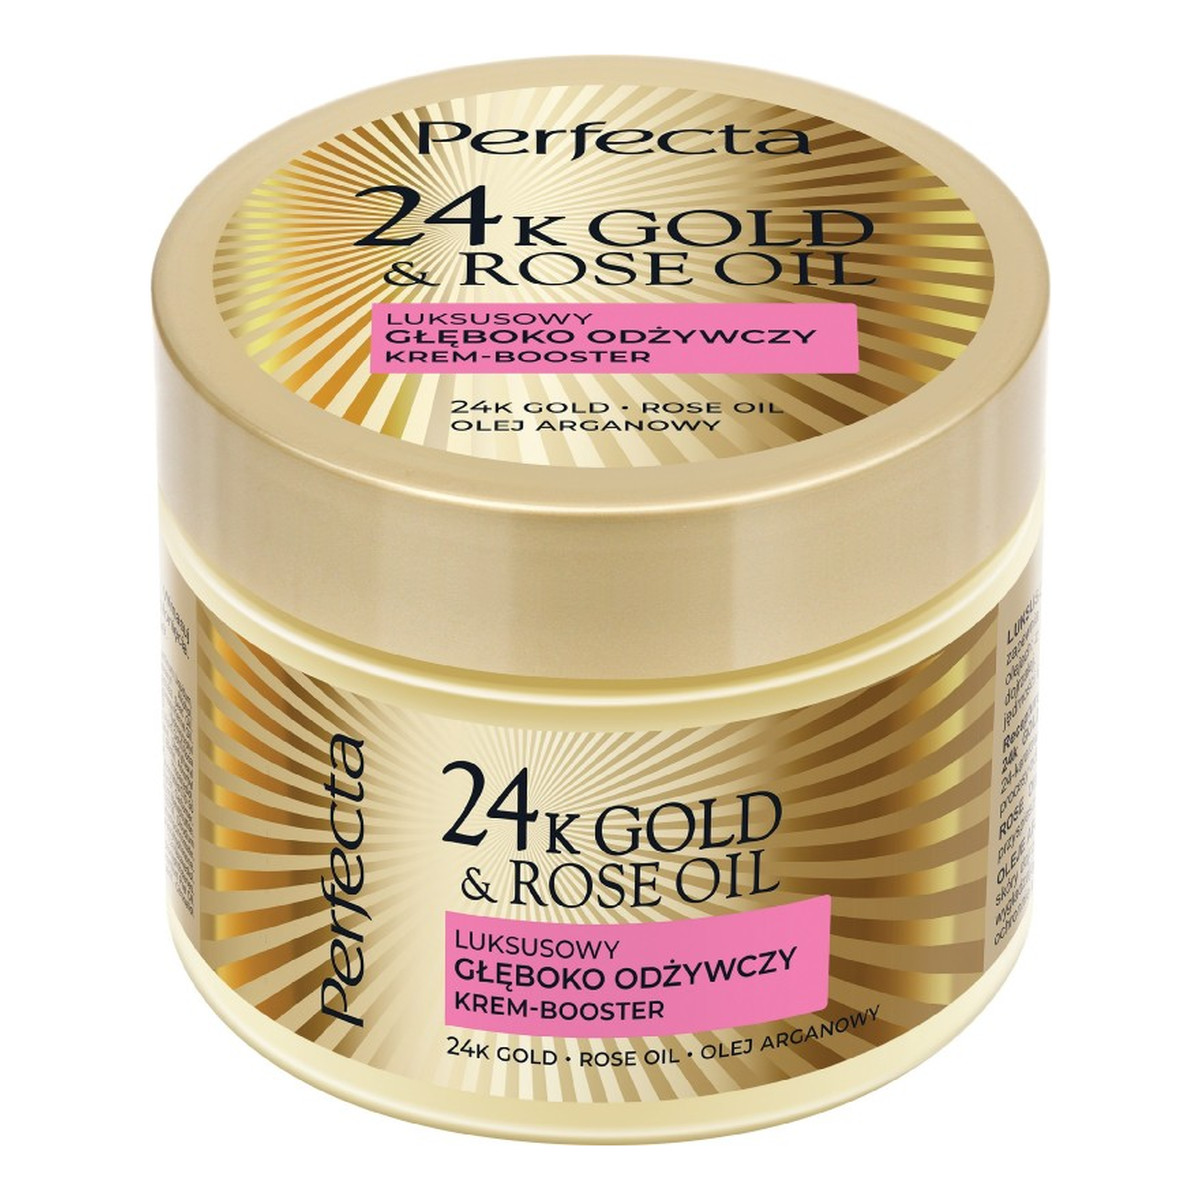 Perfecta 24K Gold Rose Oil luksusowy głęboko odżywczy Krem-booster do ciała 300g